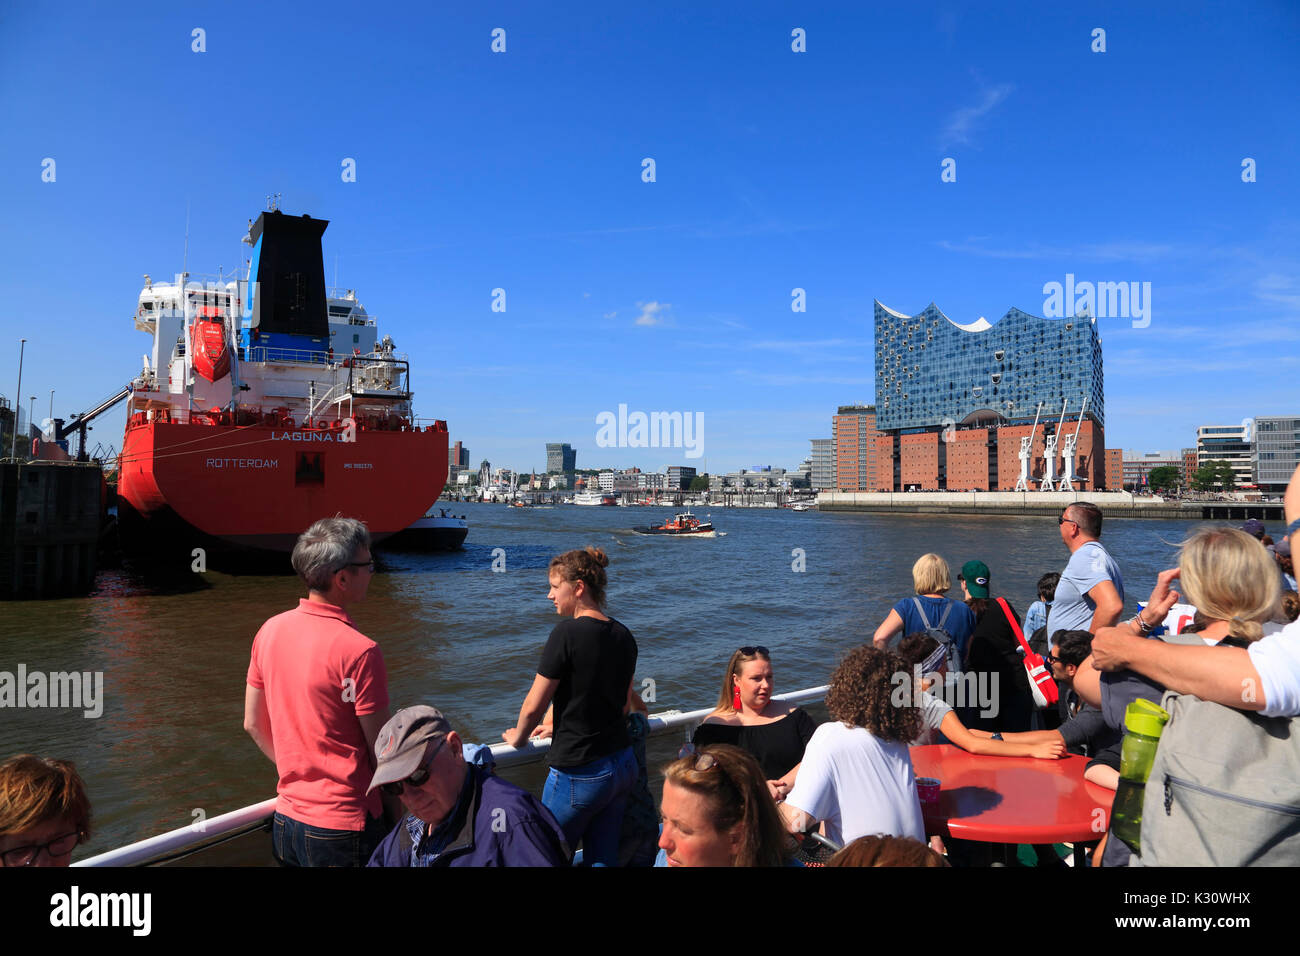 Hafenrundfahrt, Hamburg harbour, Germany, Europe Stock Photo